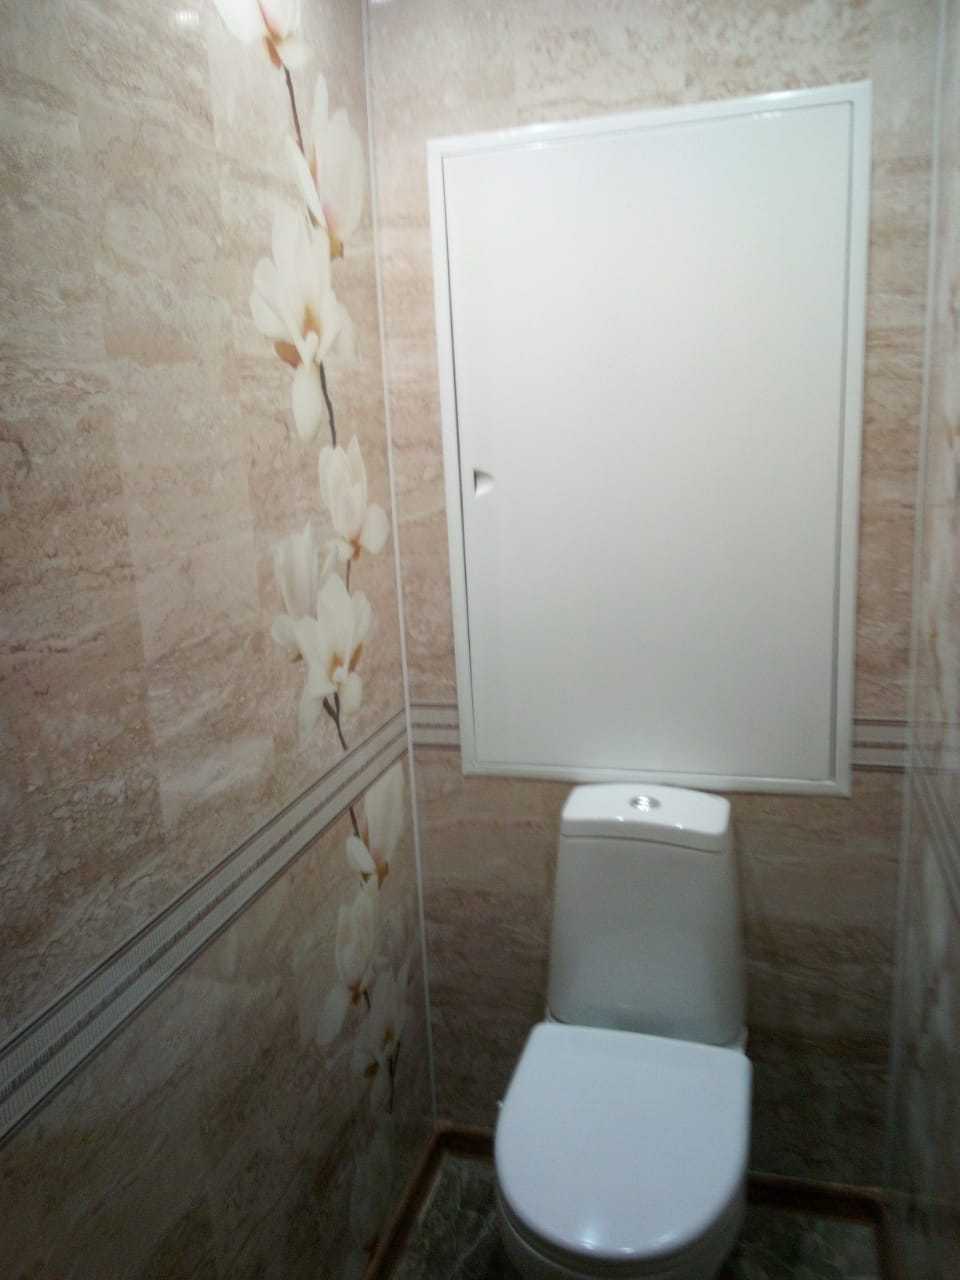 Отделка стен в туалете - 70 фото дизайна, материалы, идеи для ремонта